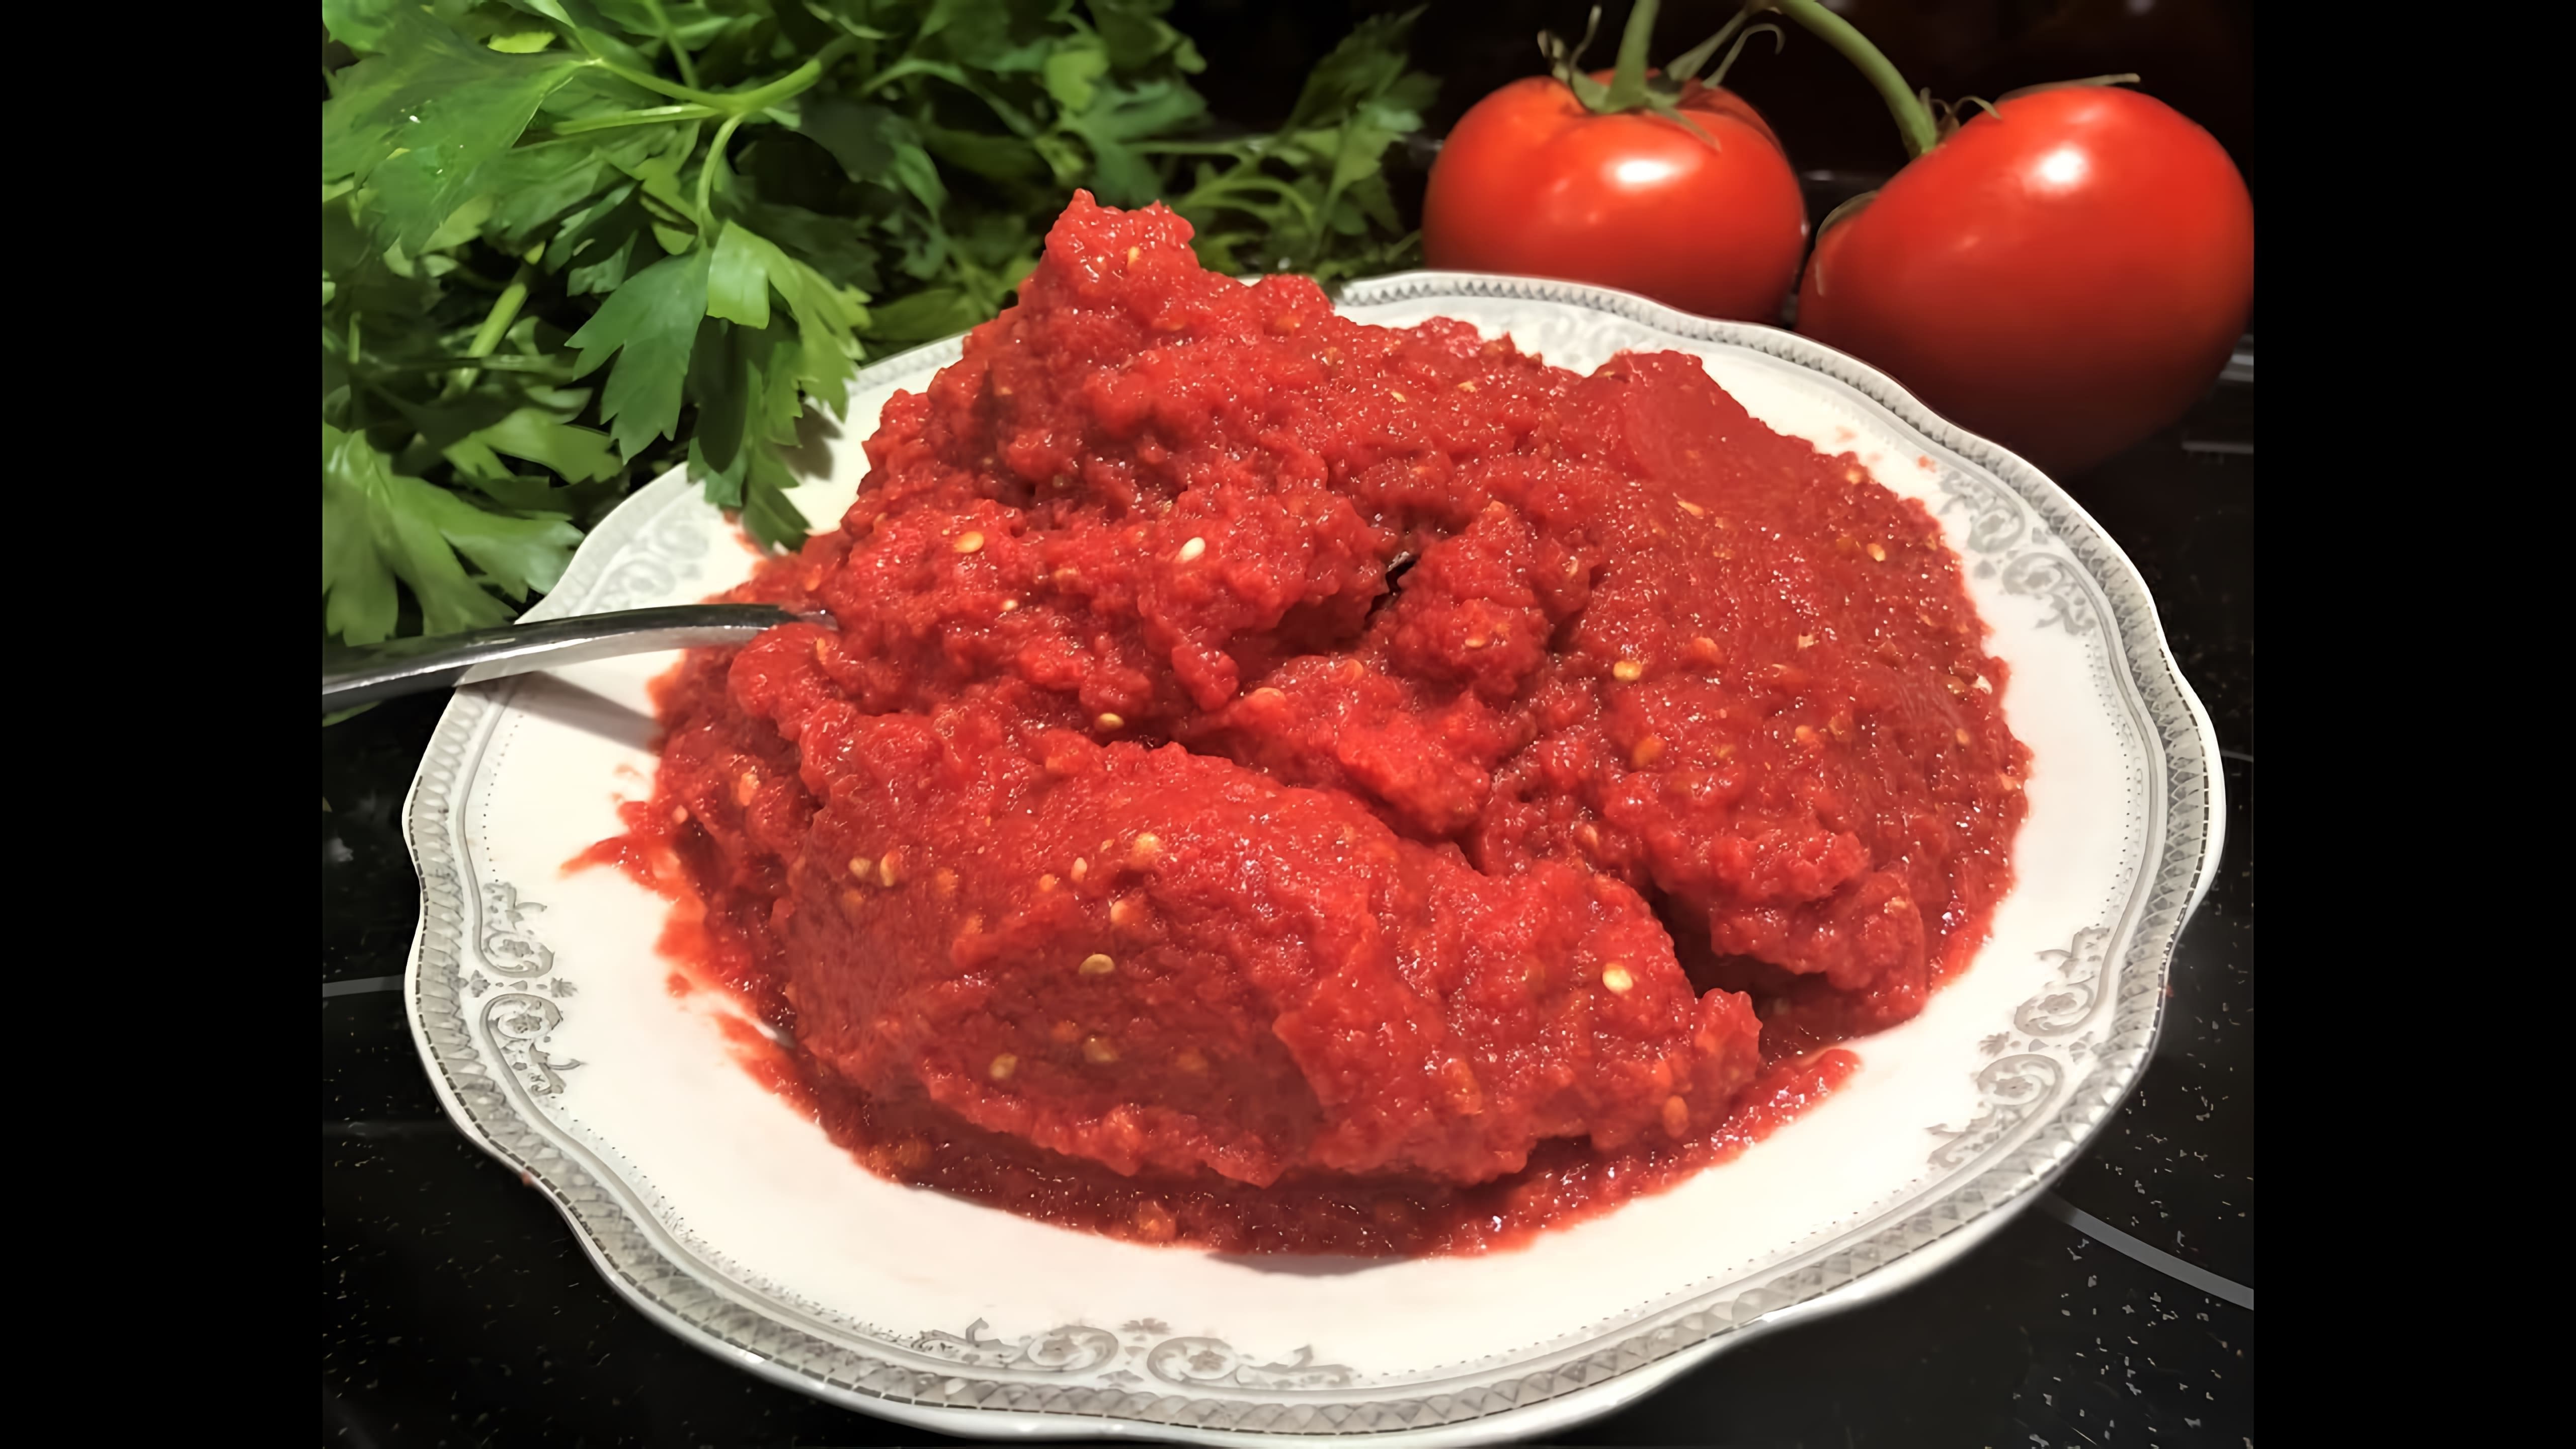 В этом видео демонстрируется процесс приготовления домашней томатной пасты из свежих помидоров